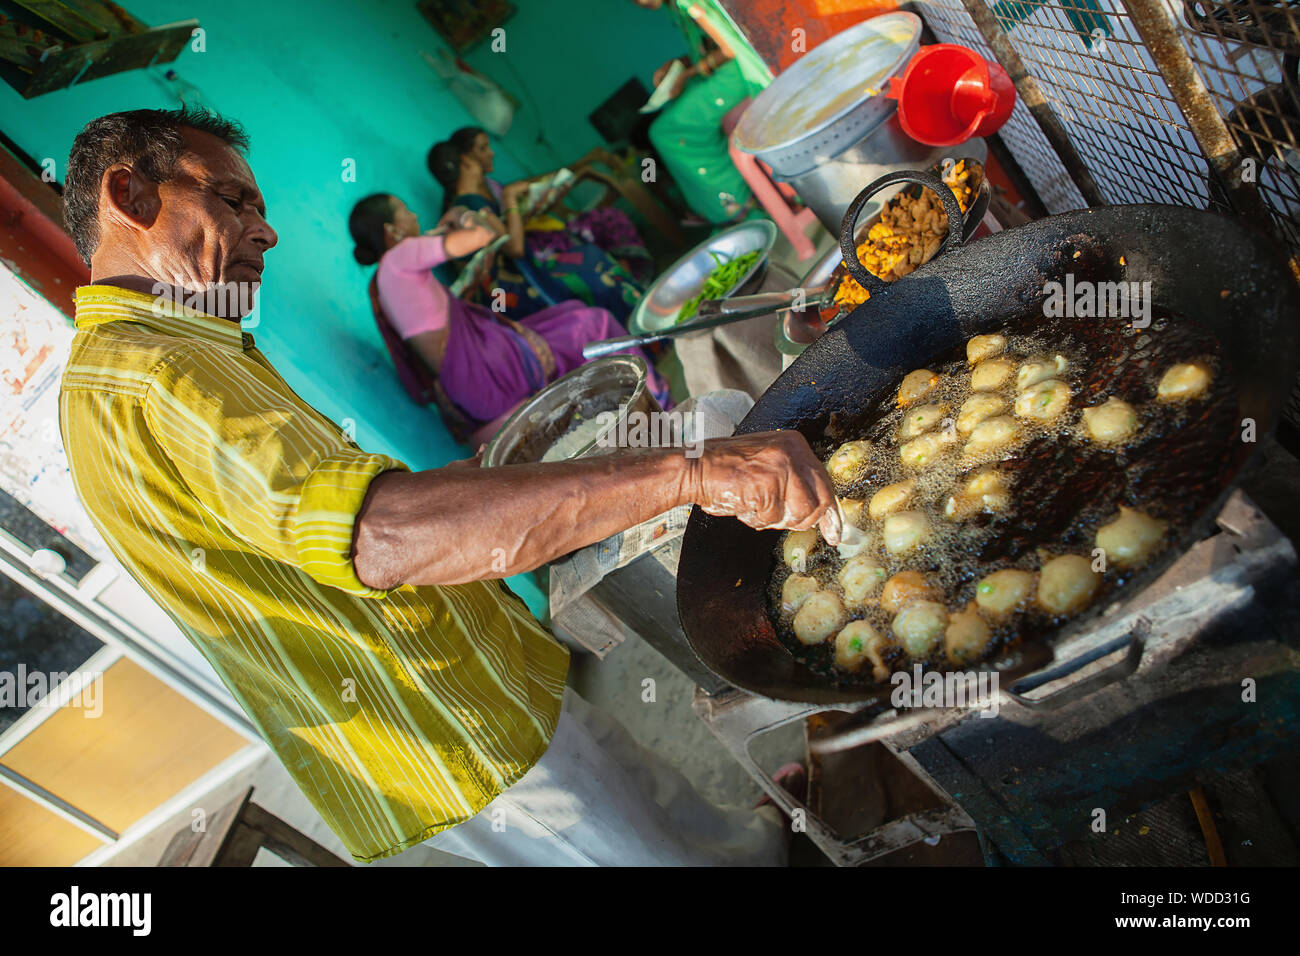 India, Andhra Pradesh, Armoor, Food hotel vendor frying chilli bhajis. Stock Photo